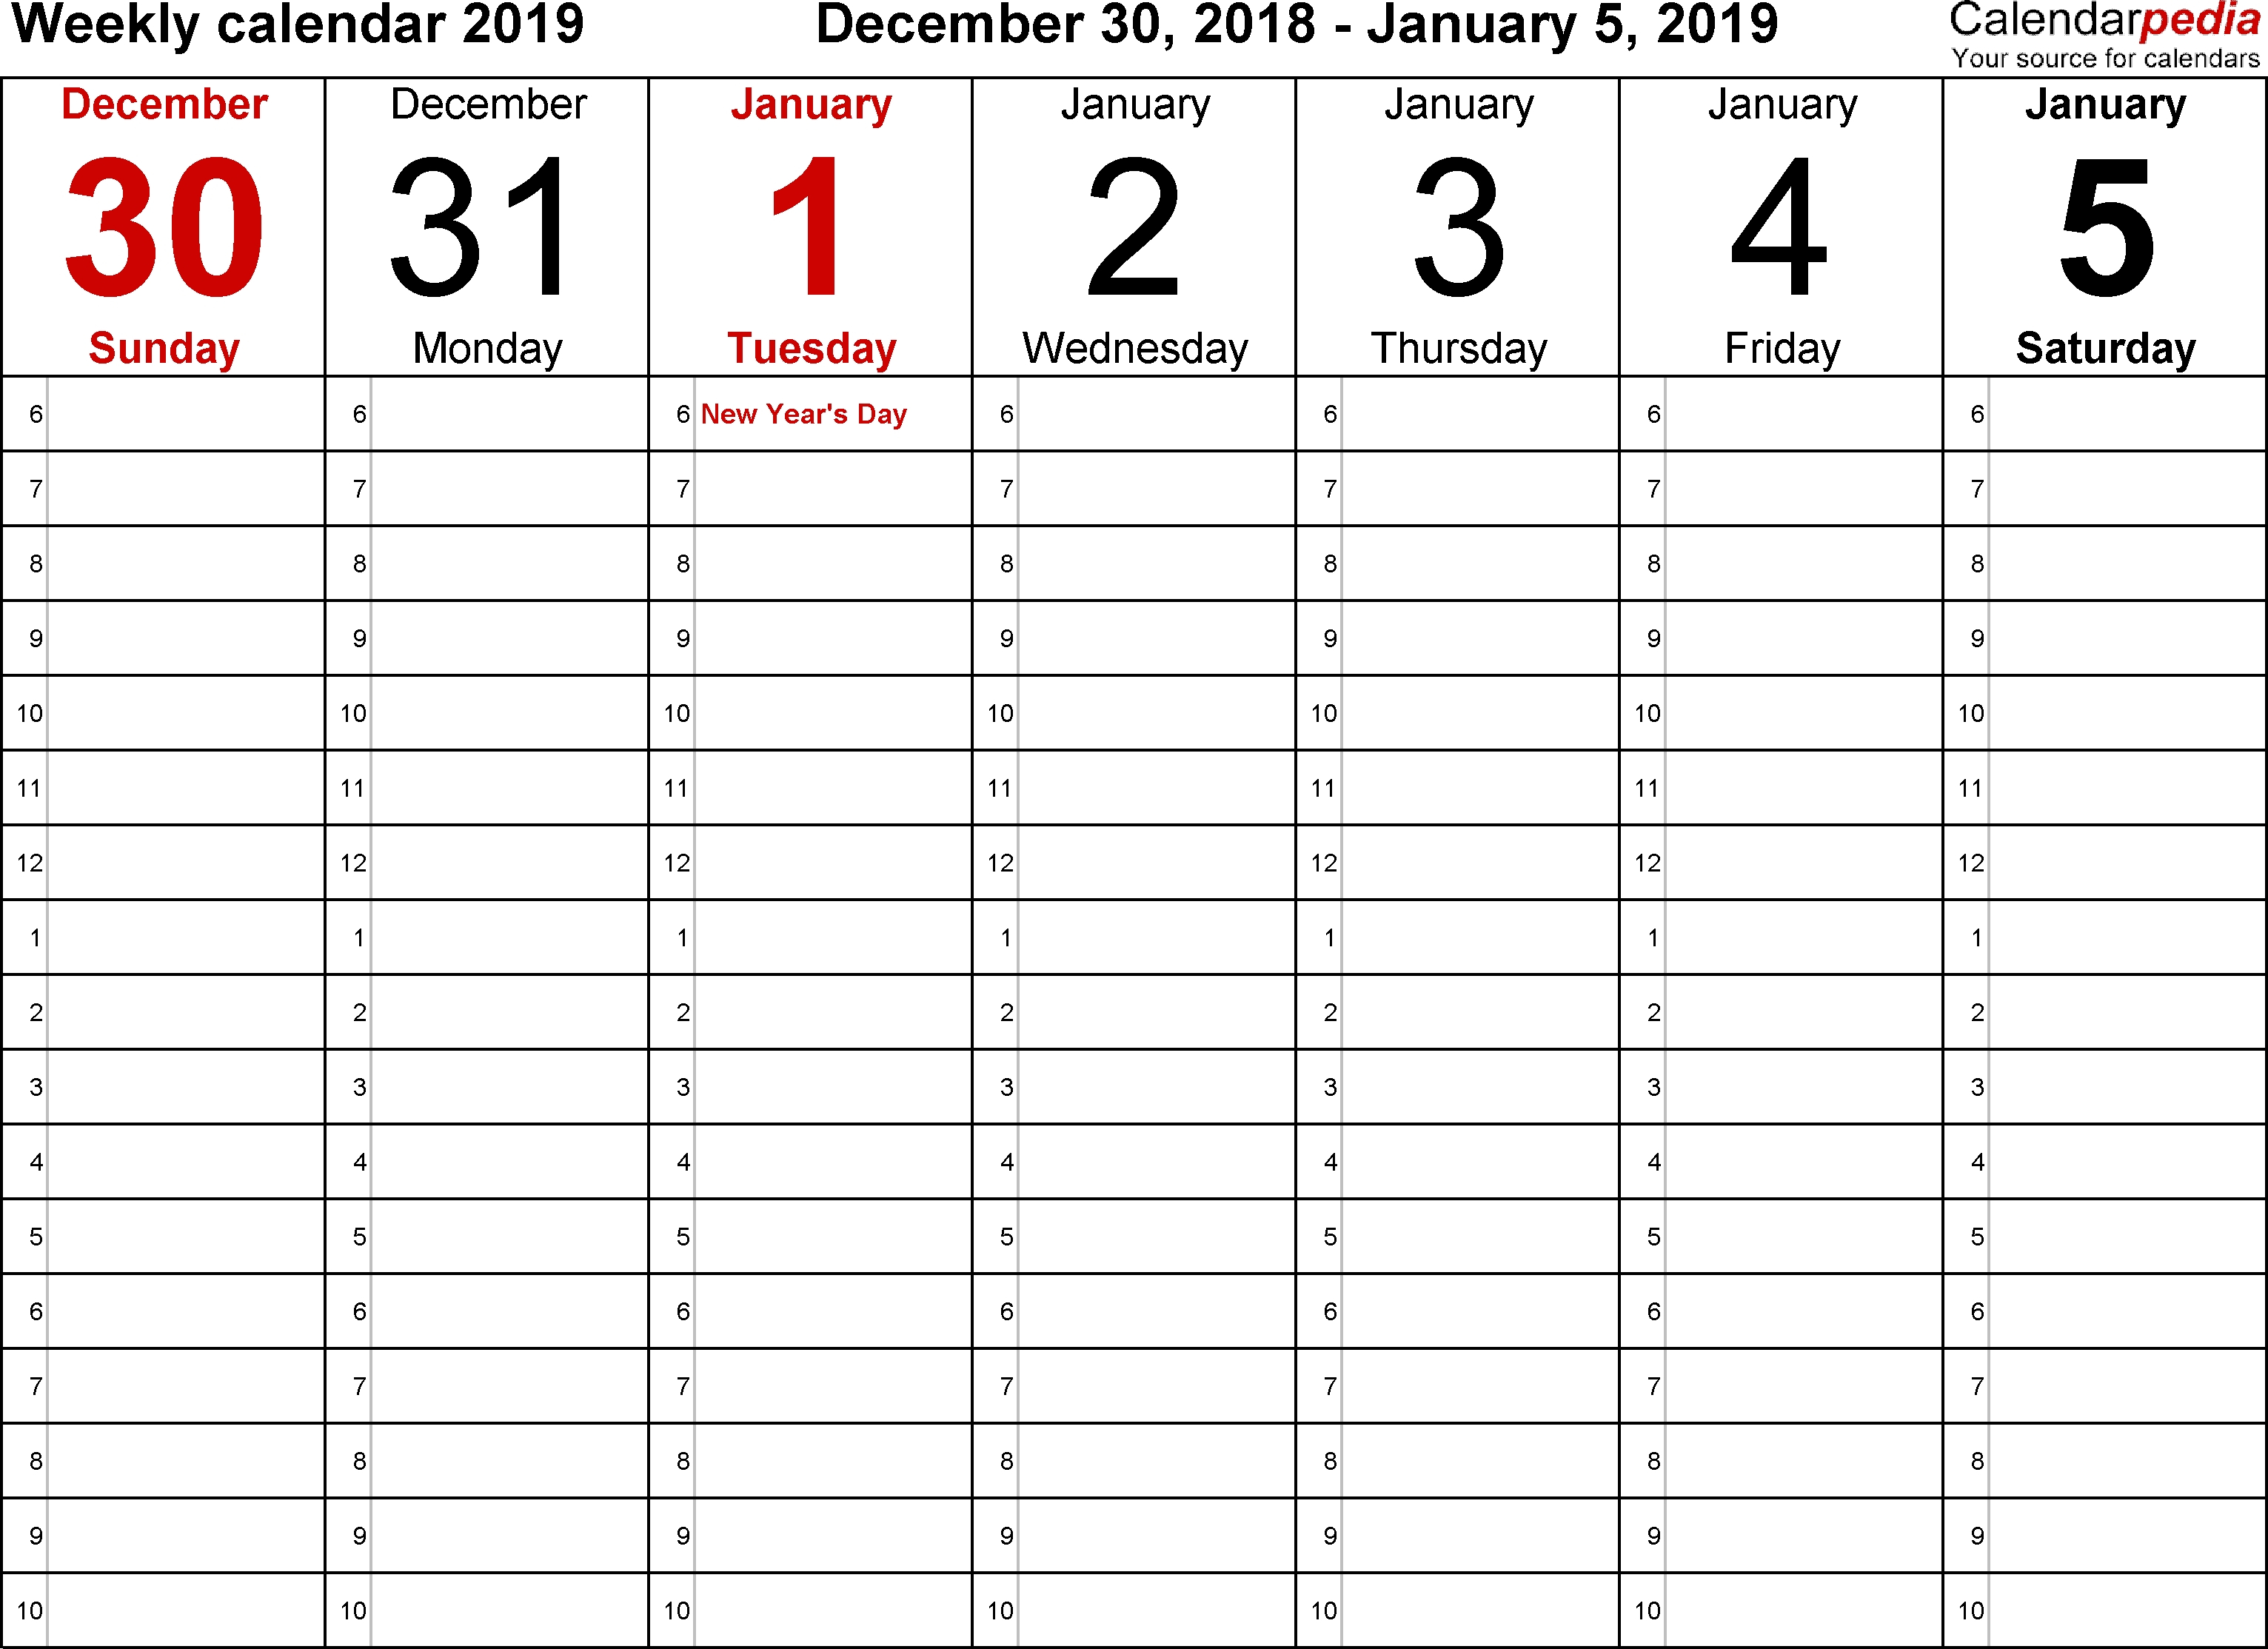 Weekly Calendar 2019 For Word - 12 Free Printable Templates 7 Week Calendar Template